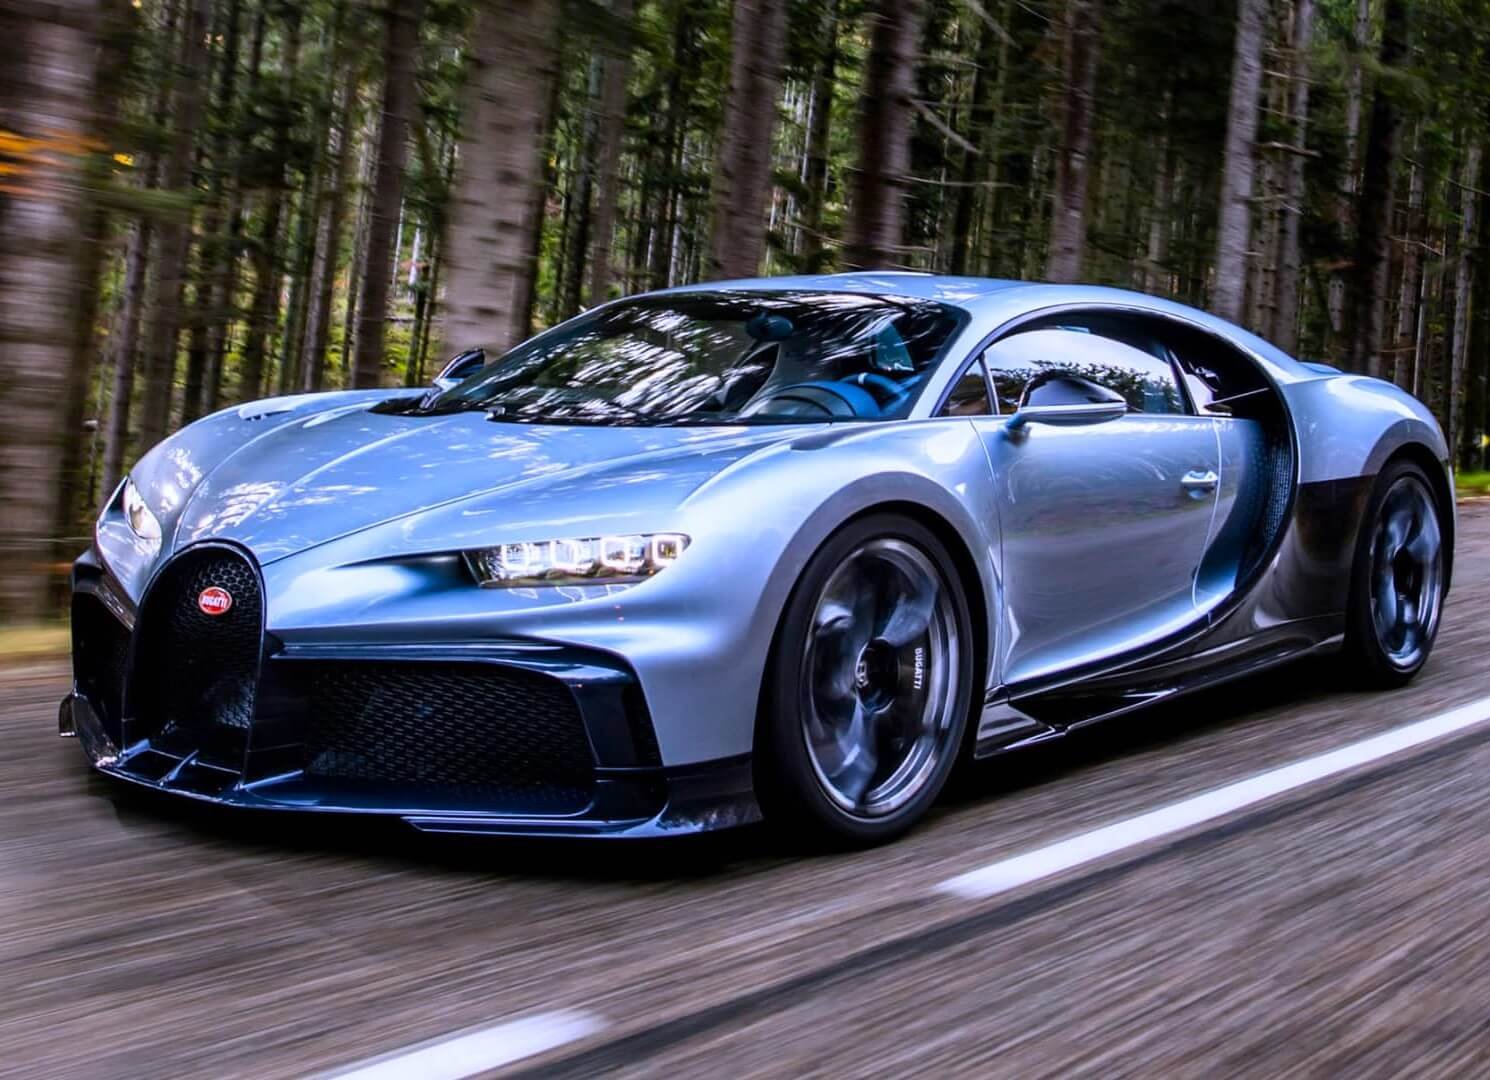 The Bugatti Price